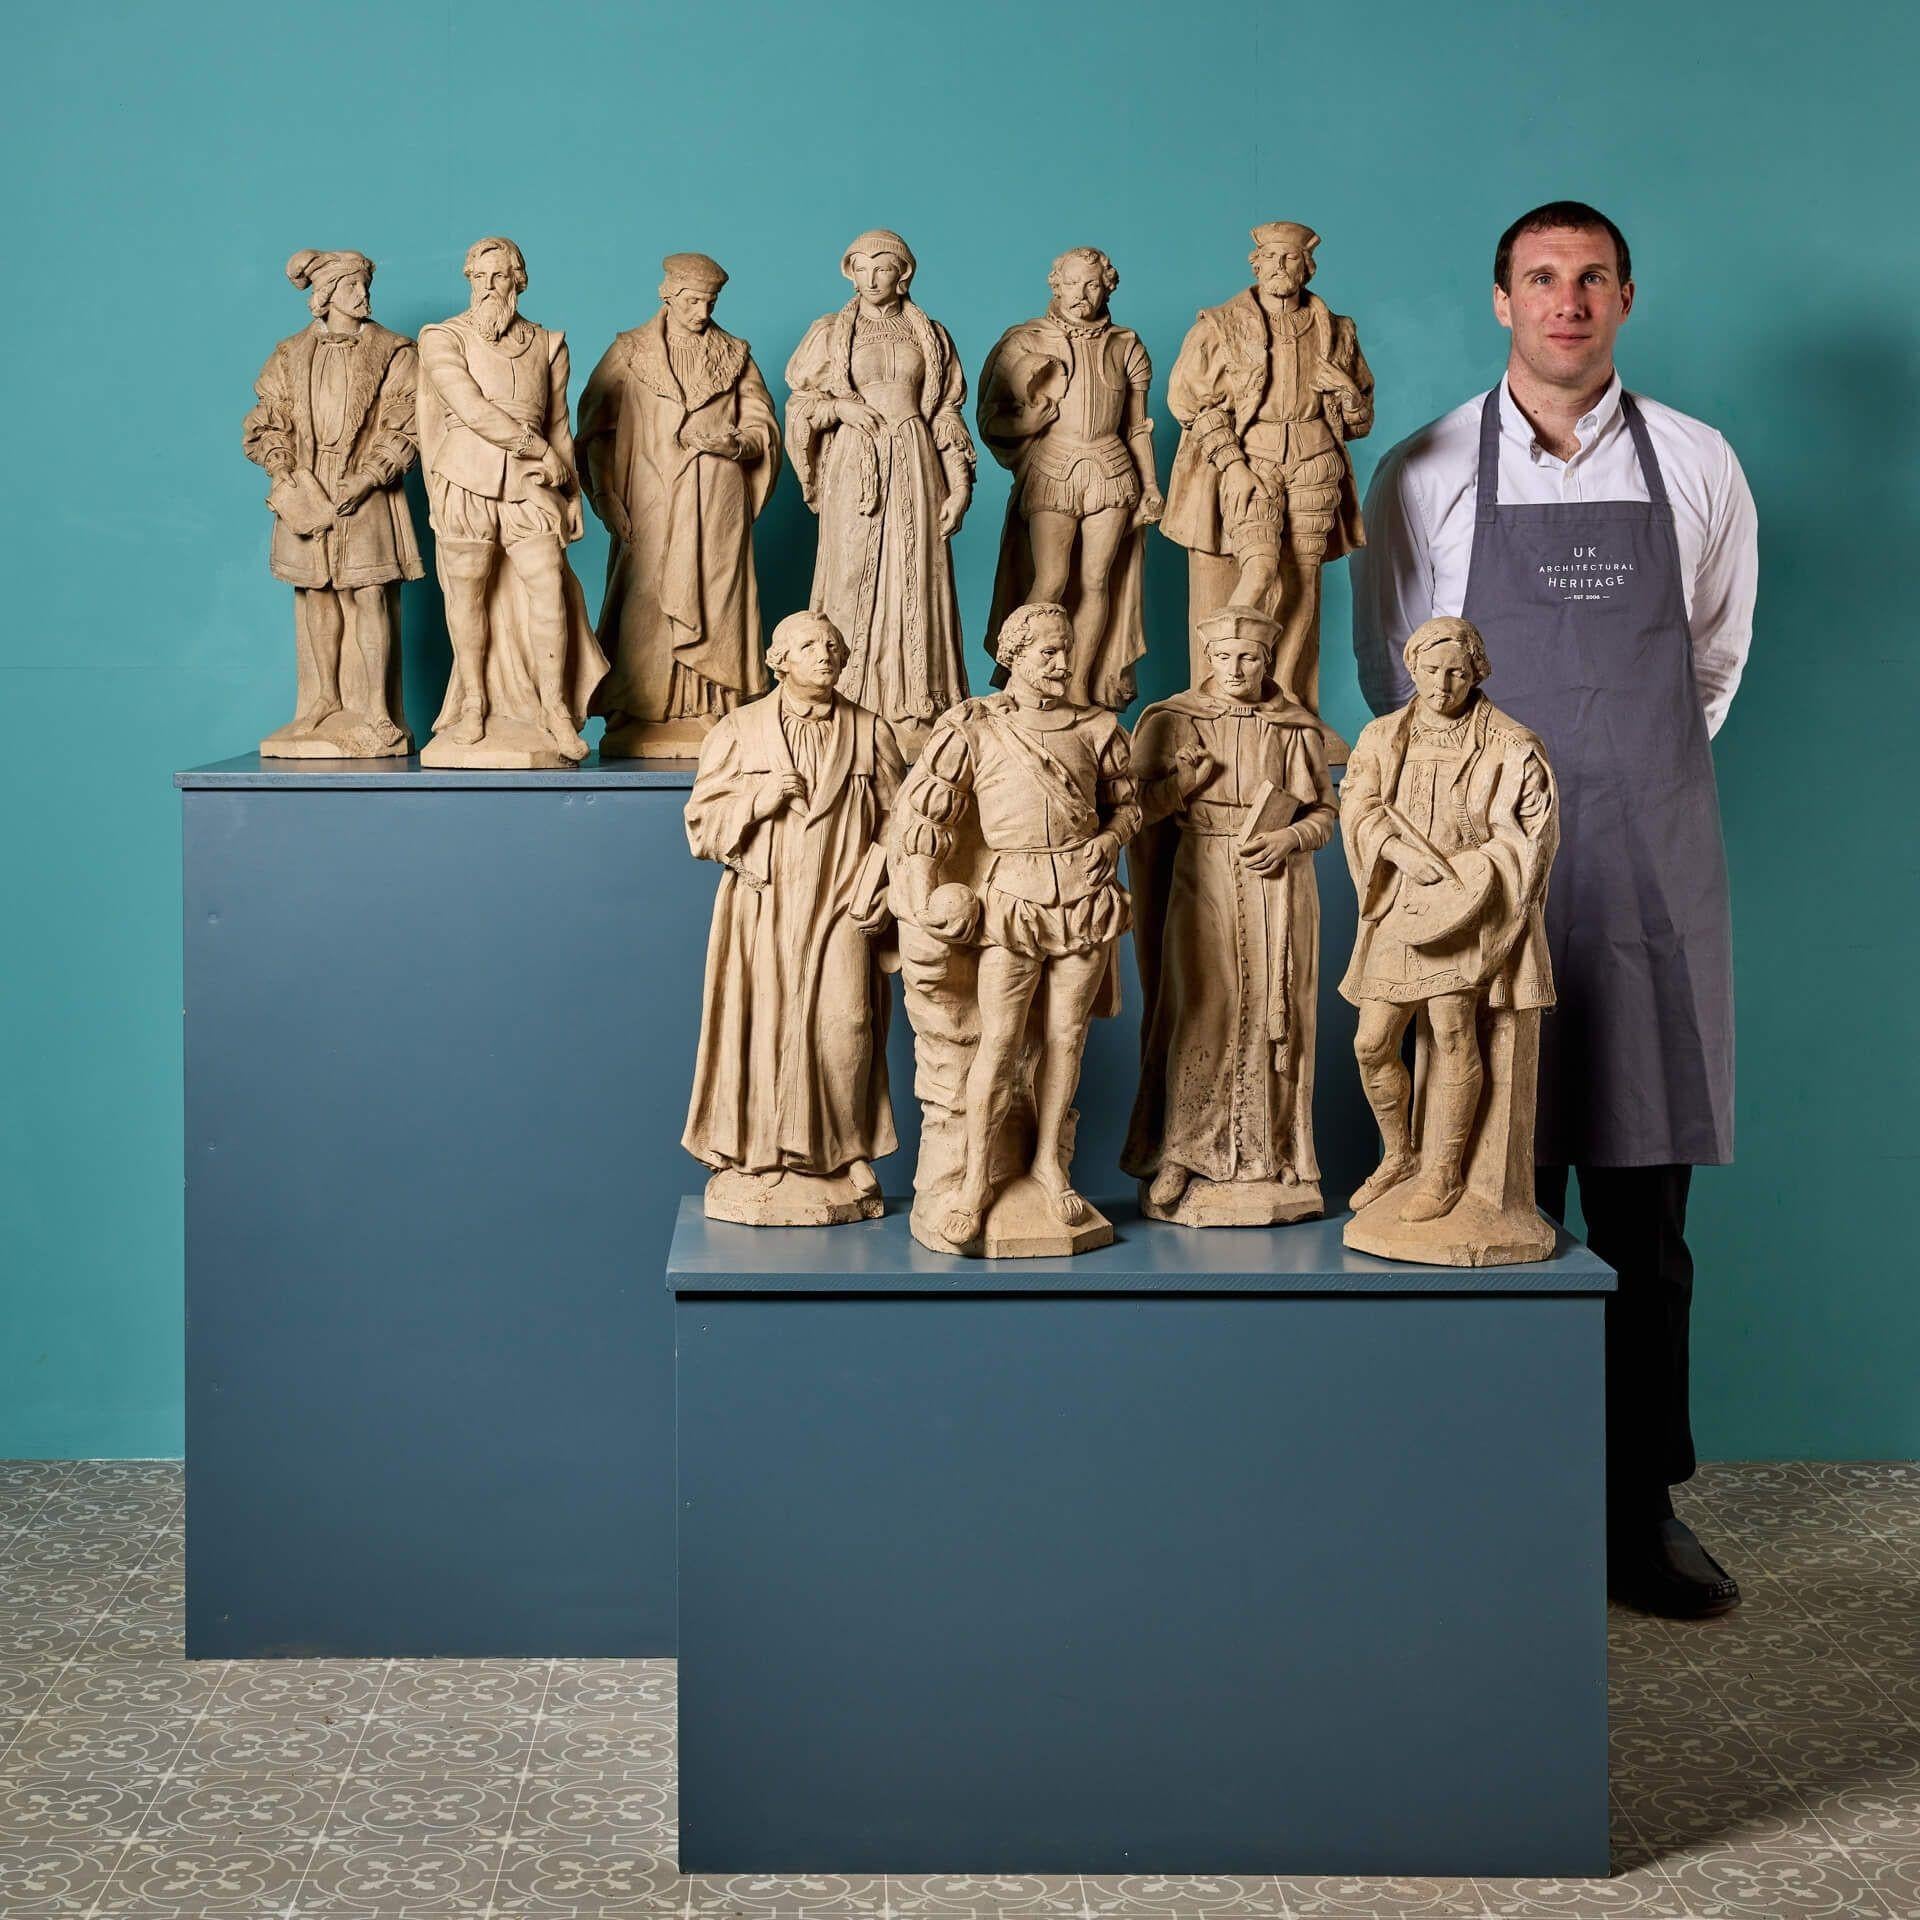 Eine prächtige Sammlung von 10 antiken englischen Terrakotta-Statuen, die bedeutende historische Persönlichkeiten darstellen, möglicherweise von Blanchard. Die Sammlung umfasst Dante, einen italienischen Dichter aus dem 14. Jahrhundert, Francis